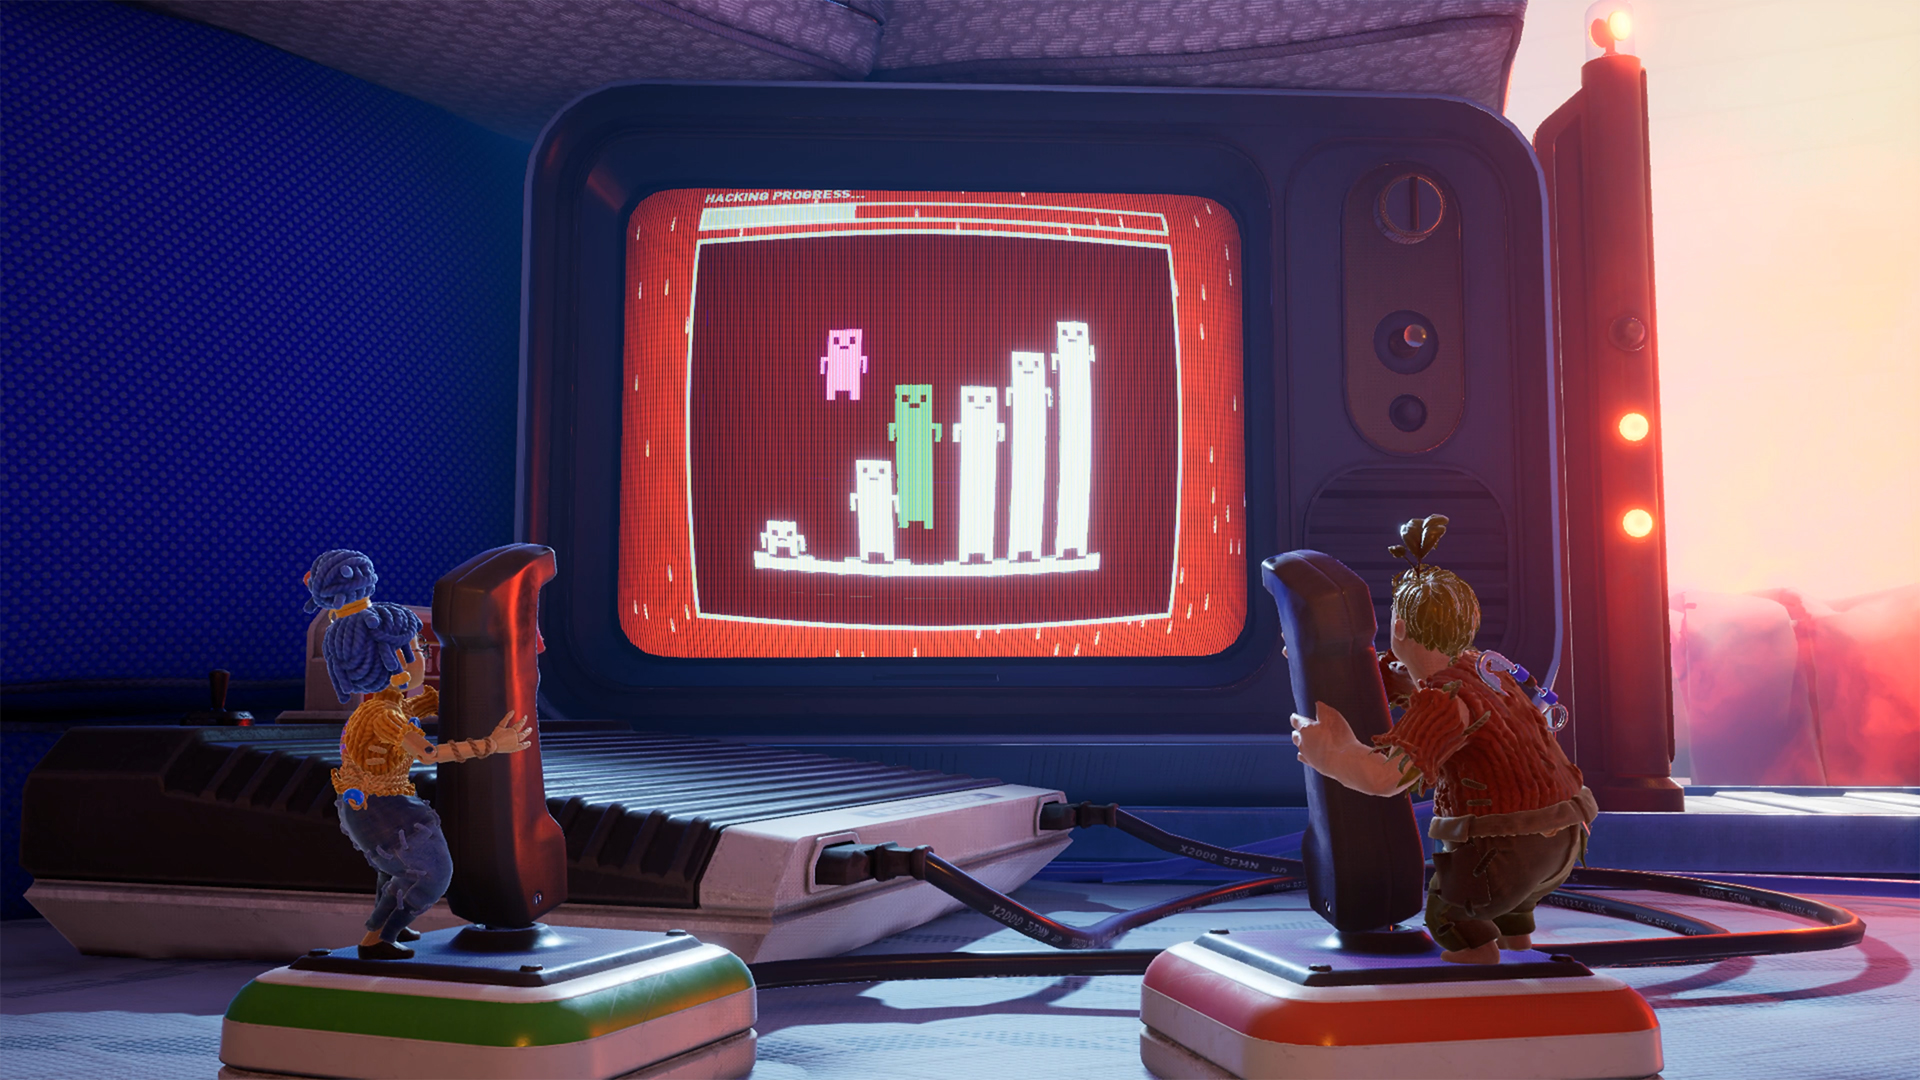 Datspillbilde av to dukkefigerer som står foran en skjerm med firkantfigurer